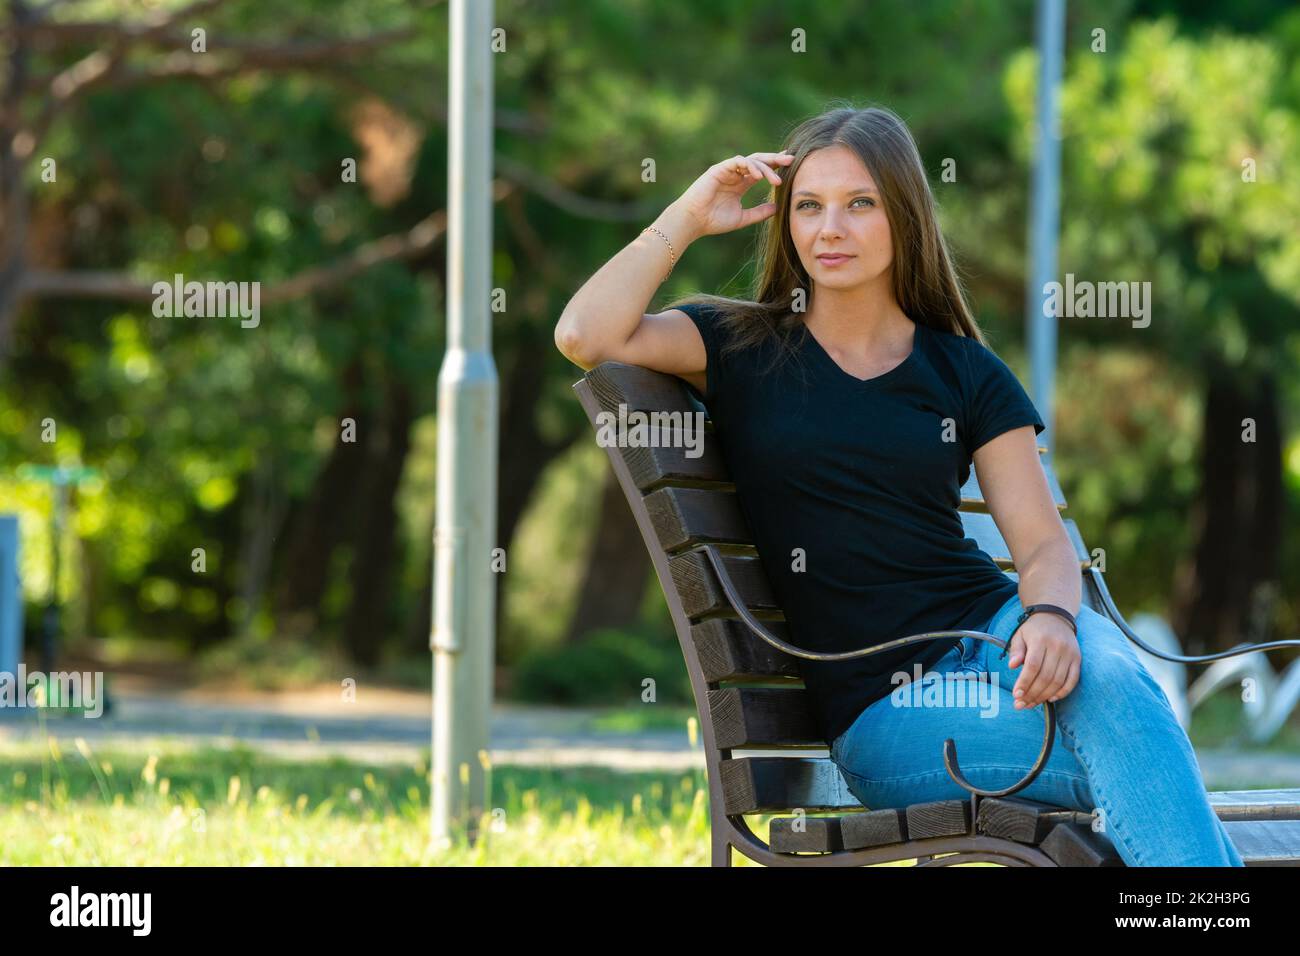 Ein schönes Mädchen in legerer Kleidung sitzt auf einer Bank in einem schönen grünen Park, das Mädchen schaut in den Rahmen Stockfoto